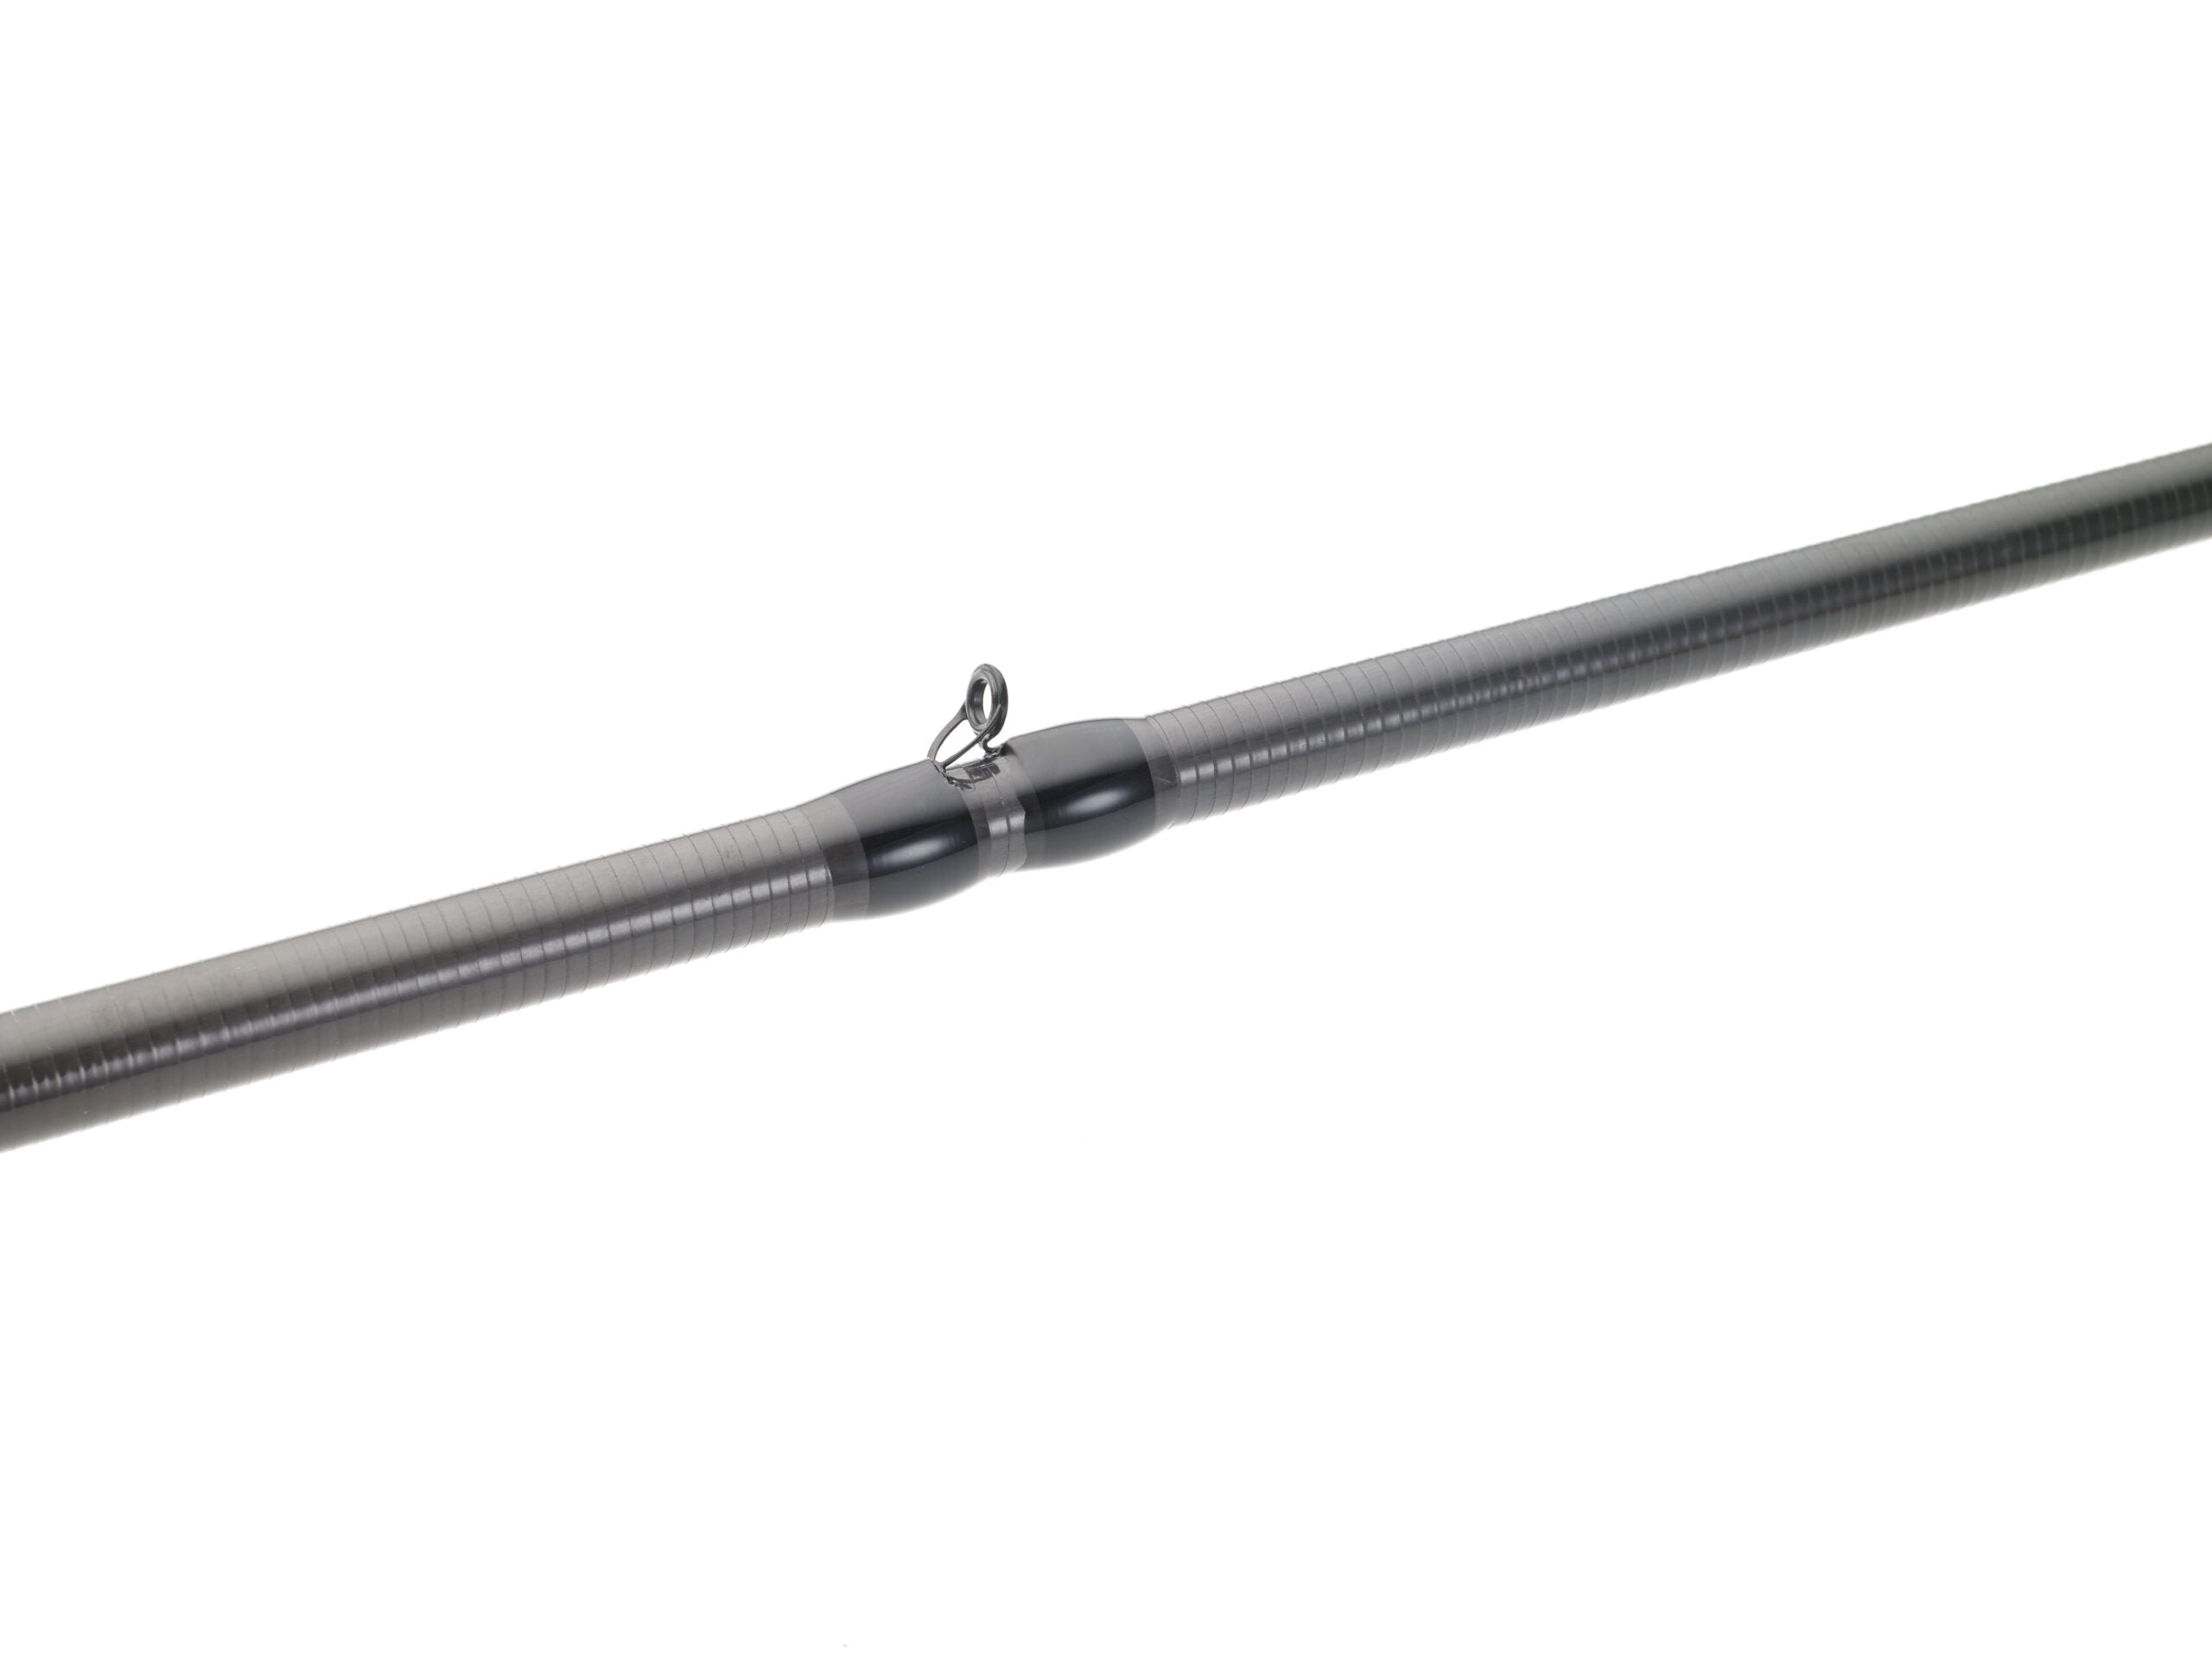 Max Fishing Rod EVA Handle Grip for Rod Building Repair